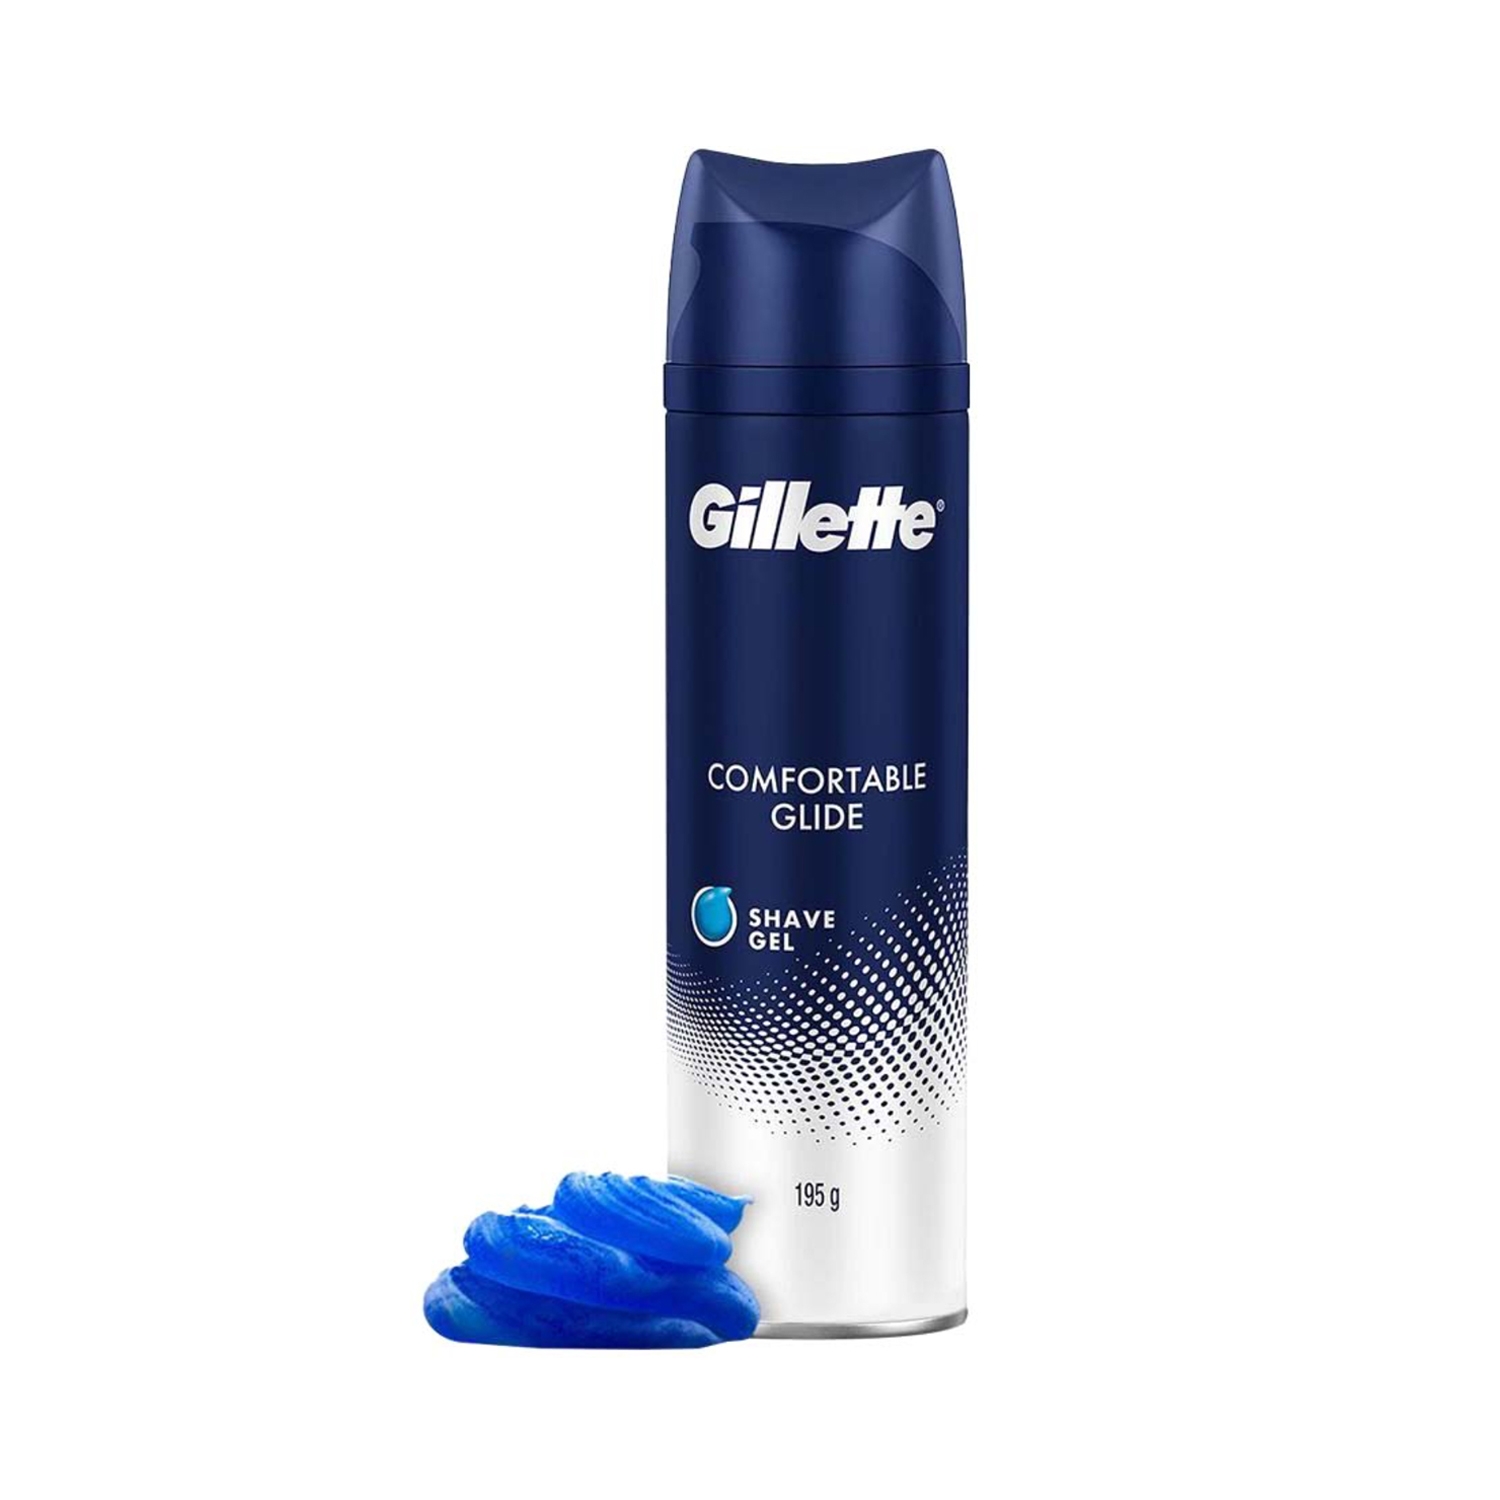 Gillette | Gillette Comfort Glide Shaving Gel (195g)